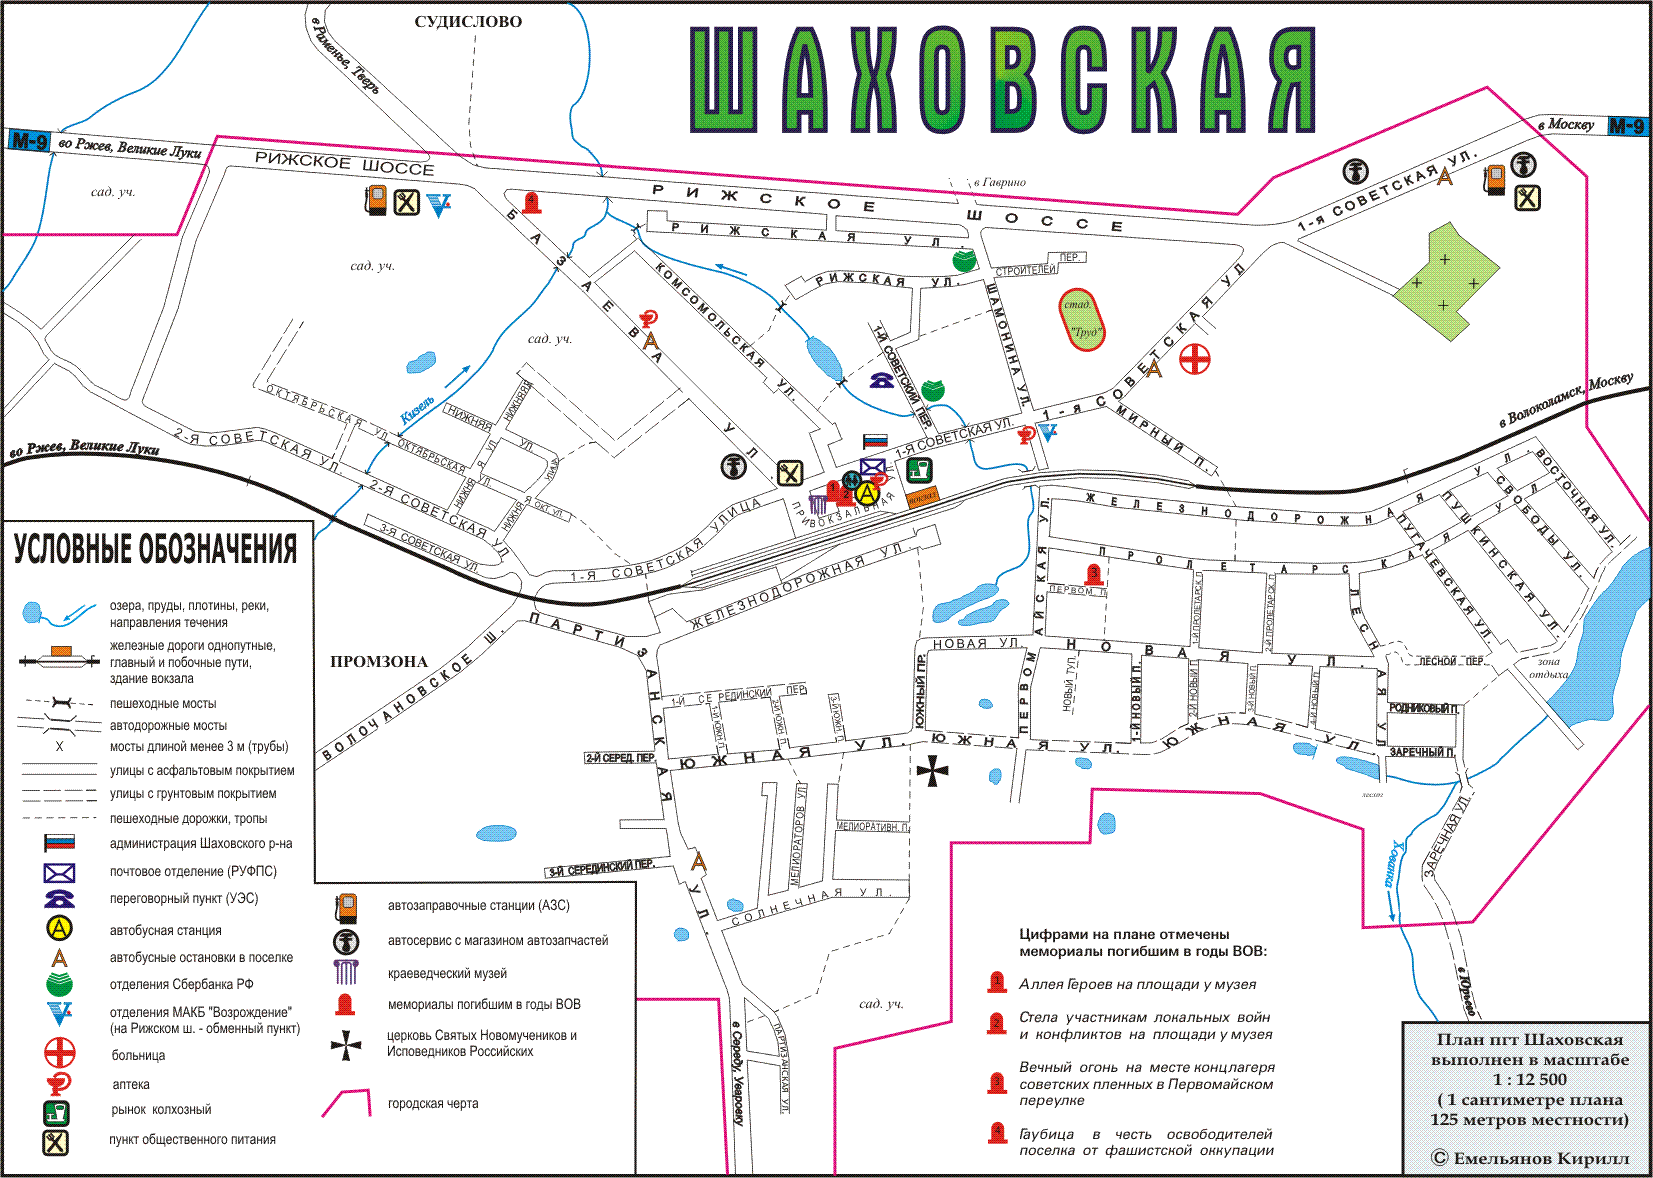 Map of Shahovskaya